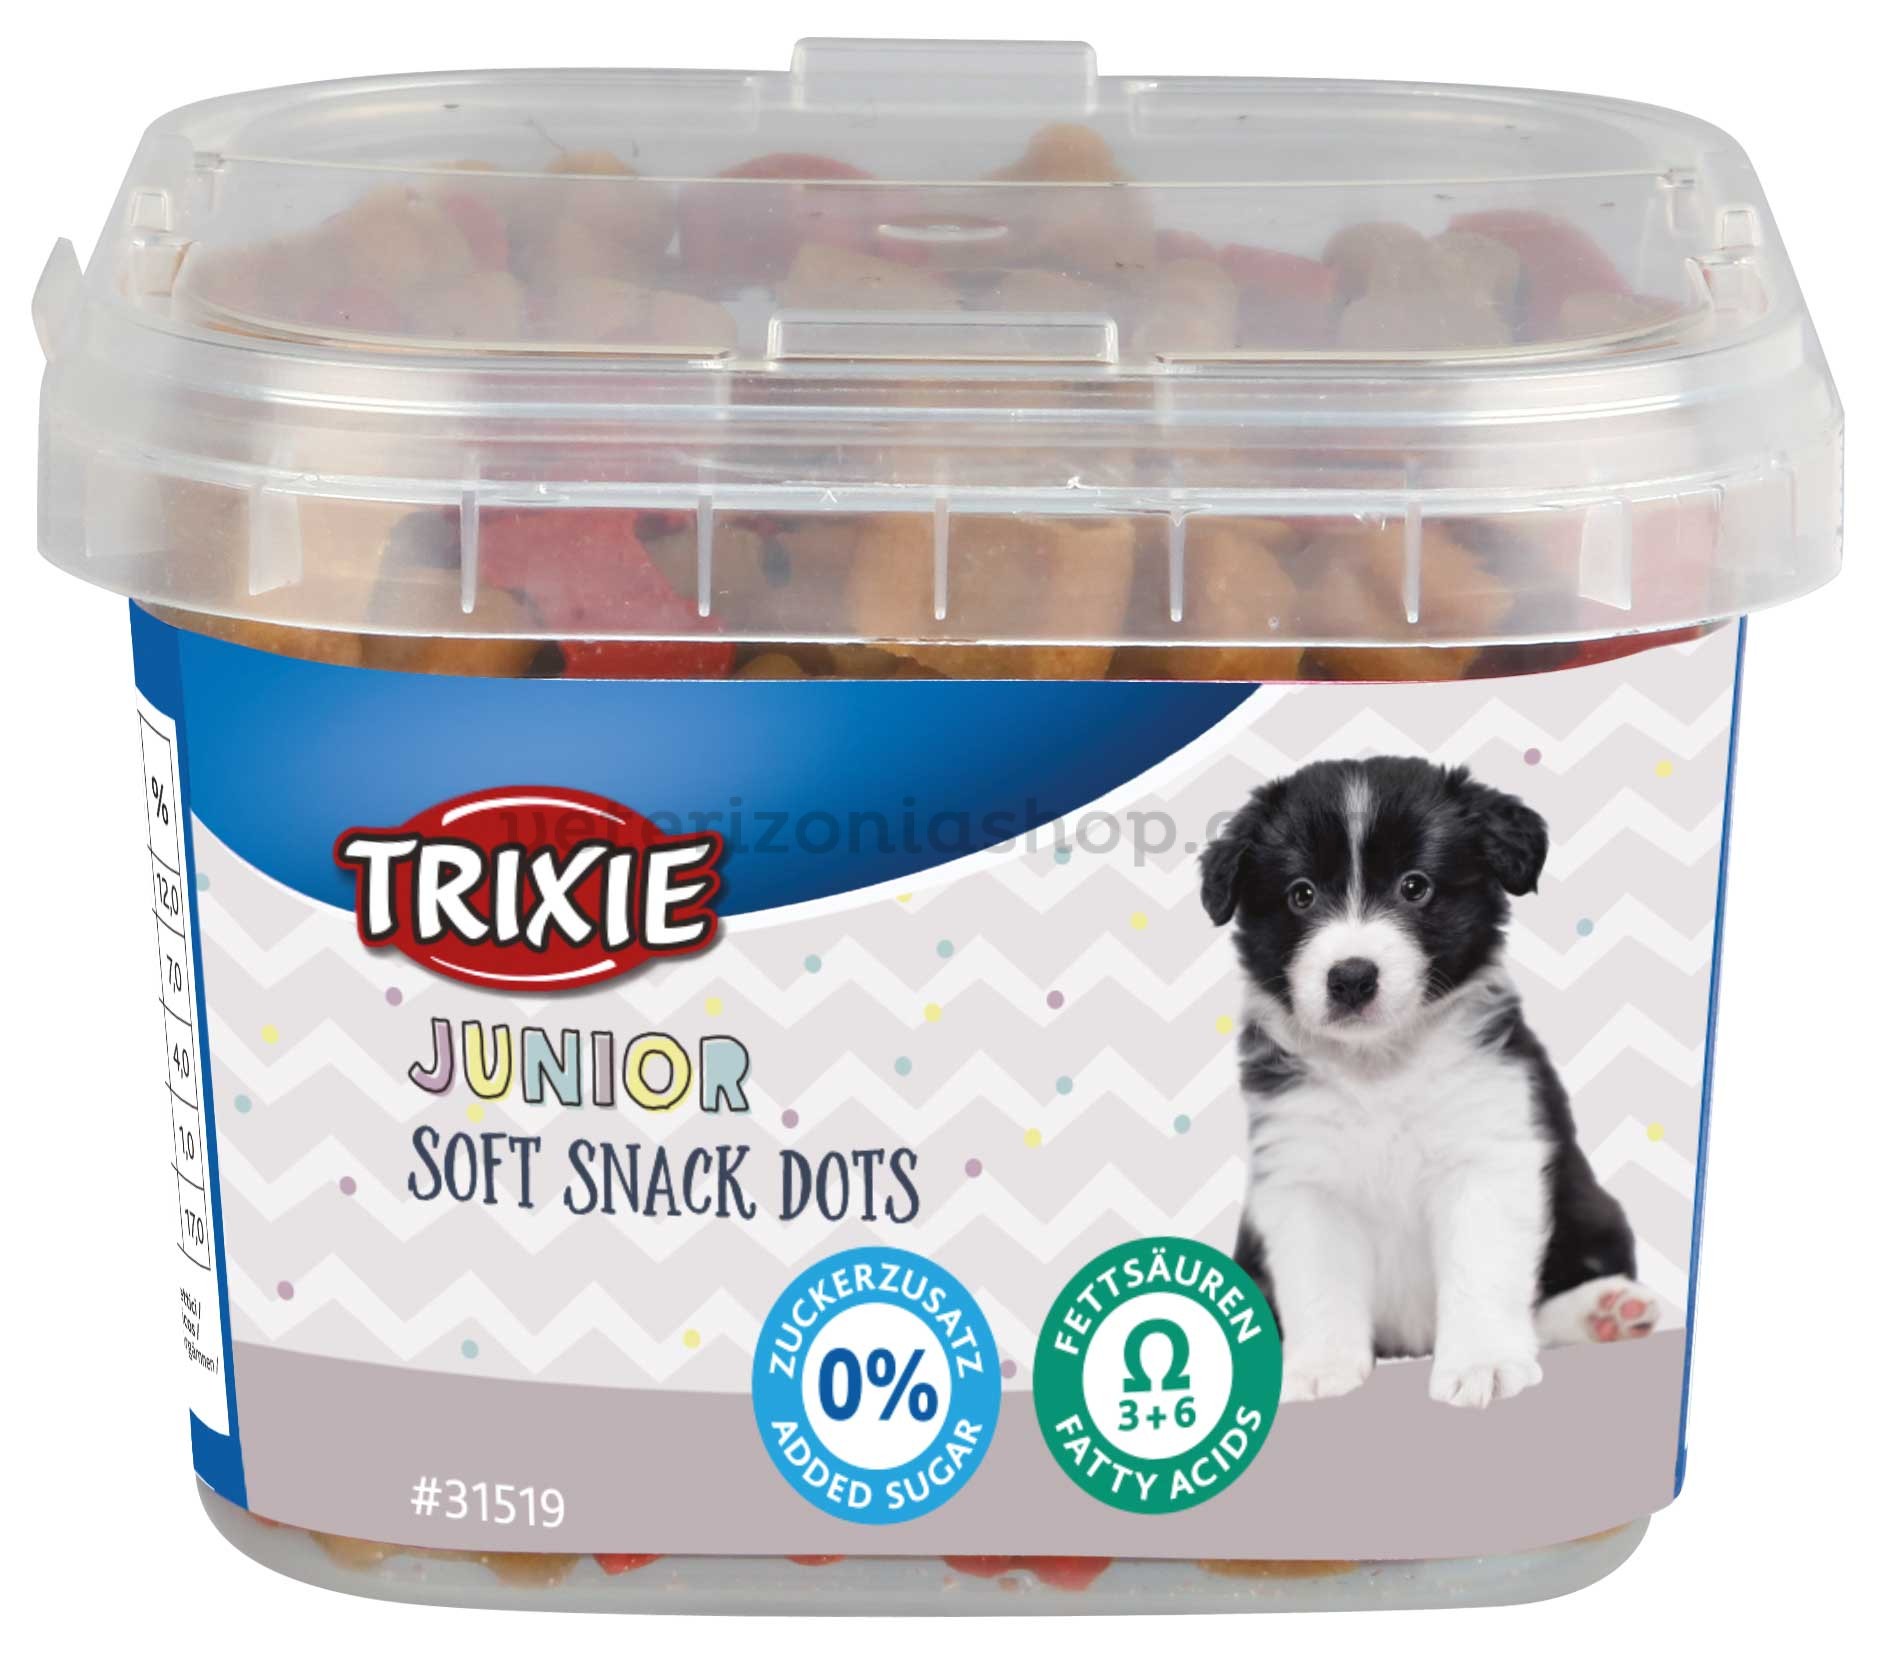 amanecer Probablemente Económico Soft Snack Dots con Omega-3 y 6 para cachorros, 140grs - Veterizonia